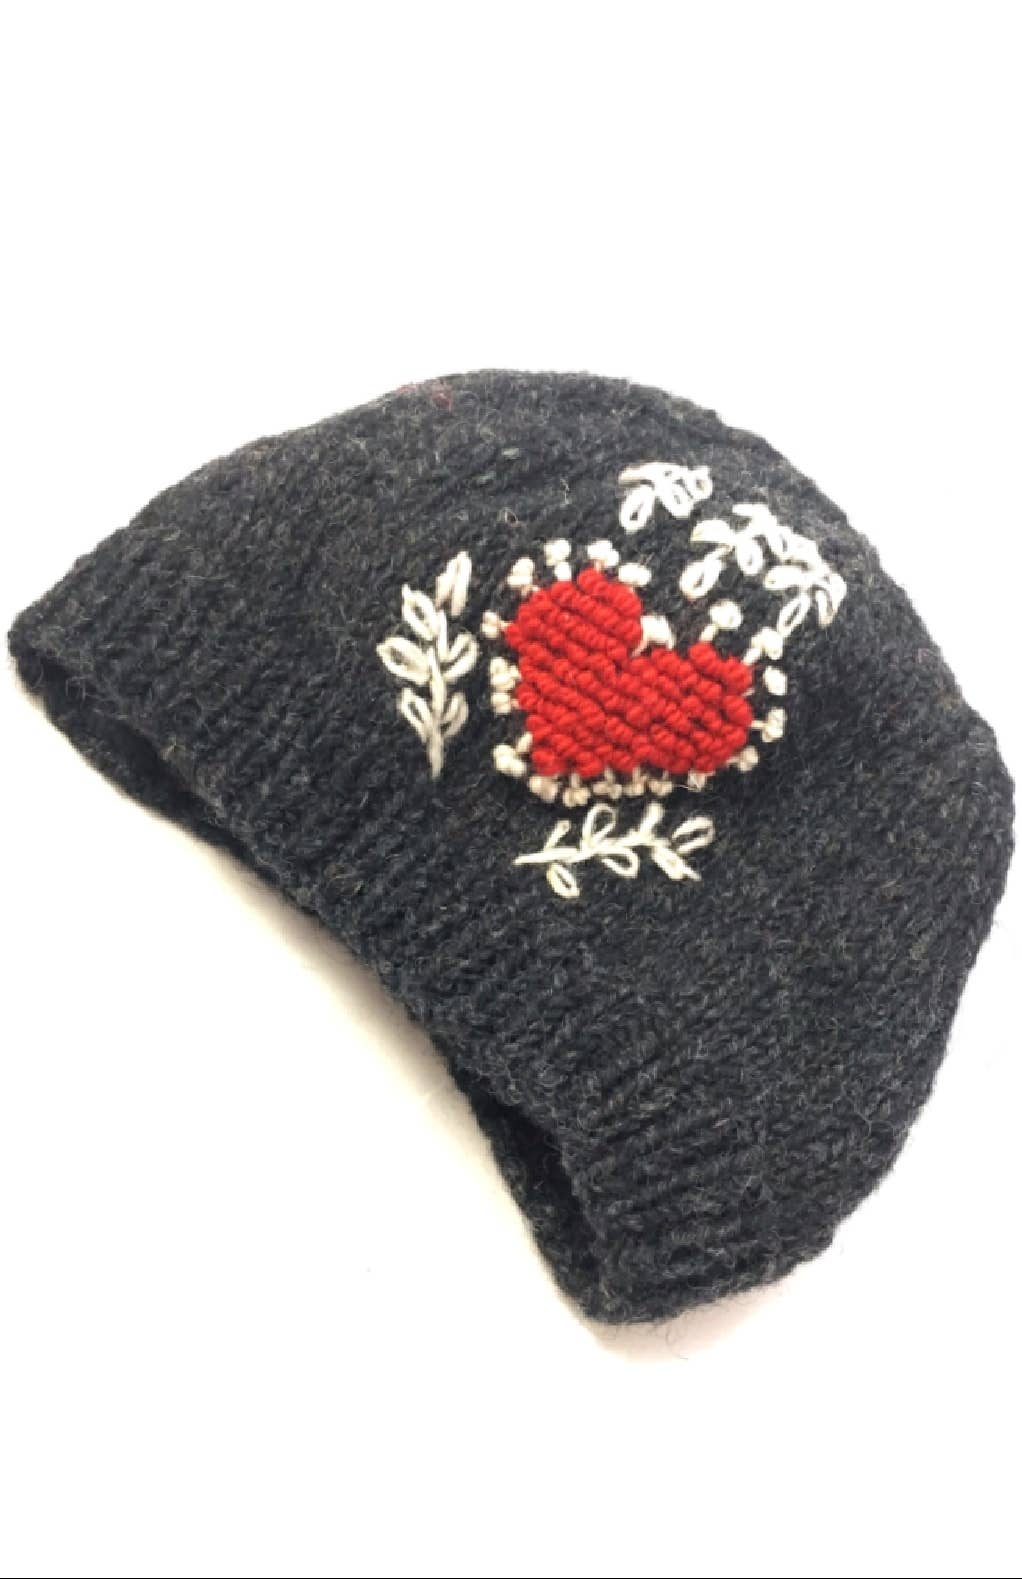 Wool Knit Hat w/Heart Design, fleece lined